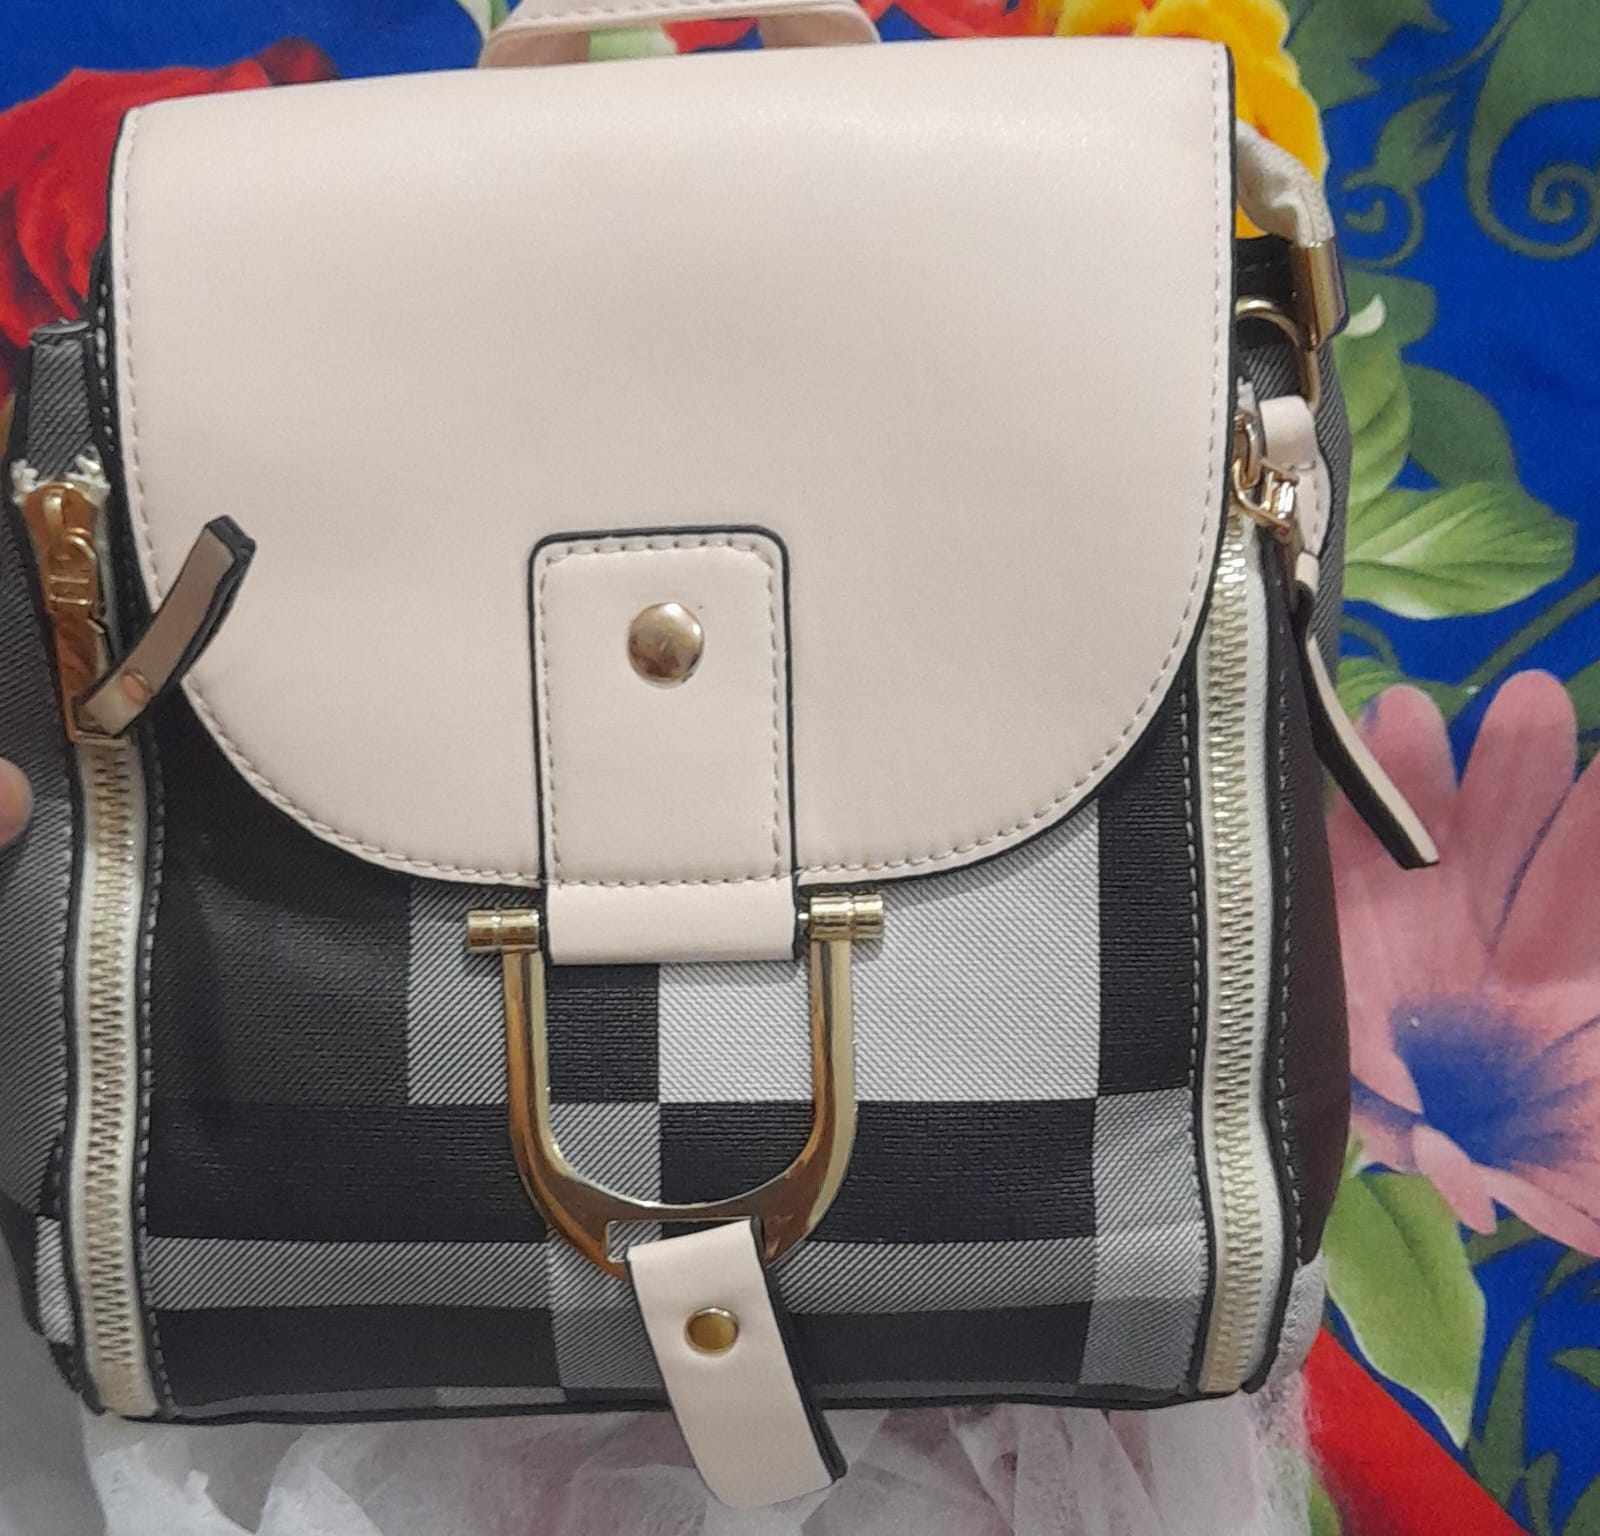 https://mines.pk/product/duet-backpack-handbag-for-girls-women/